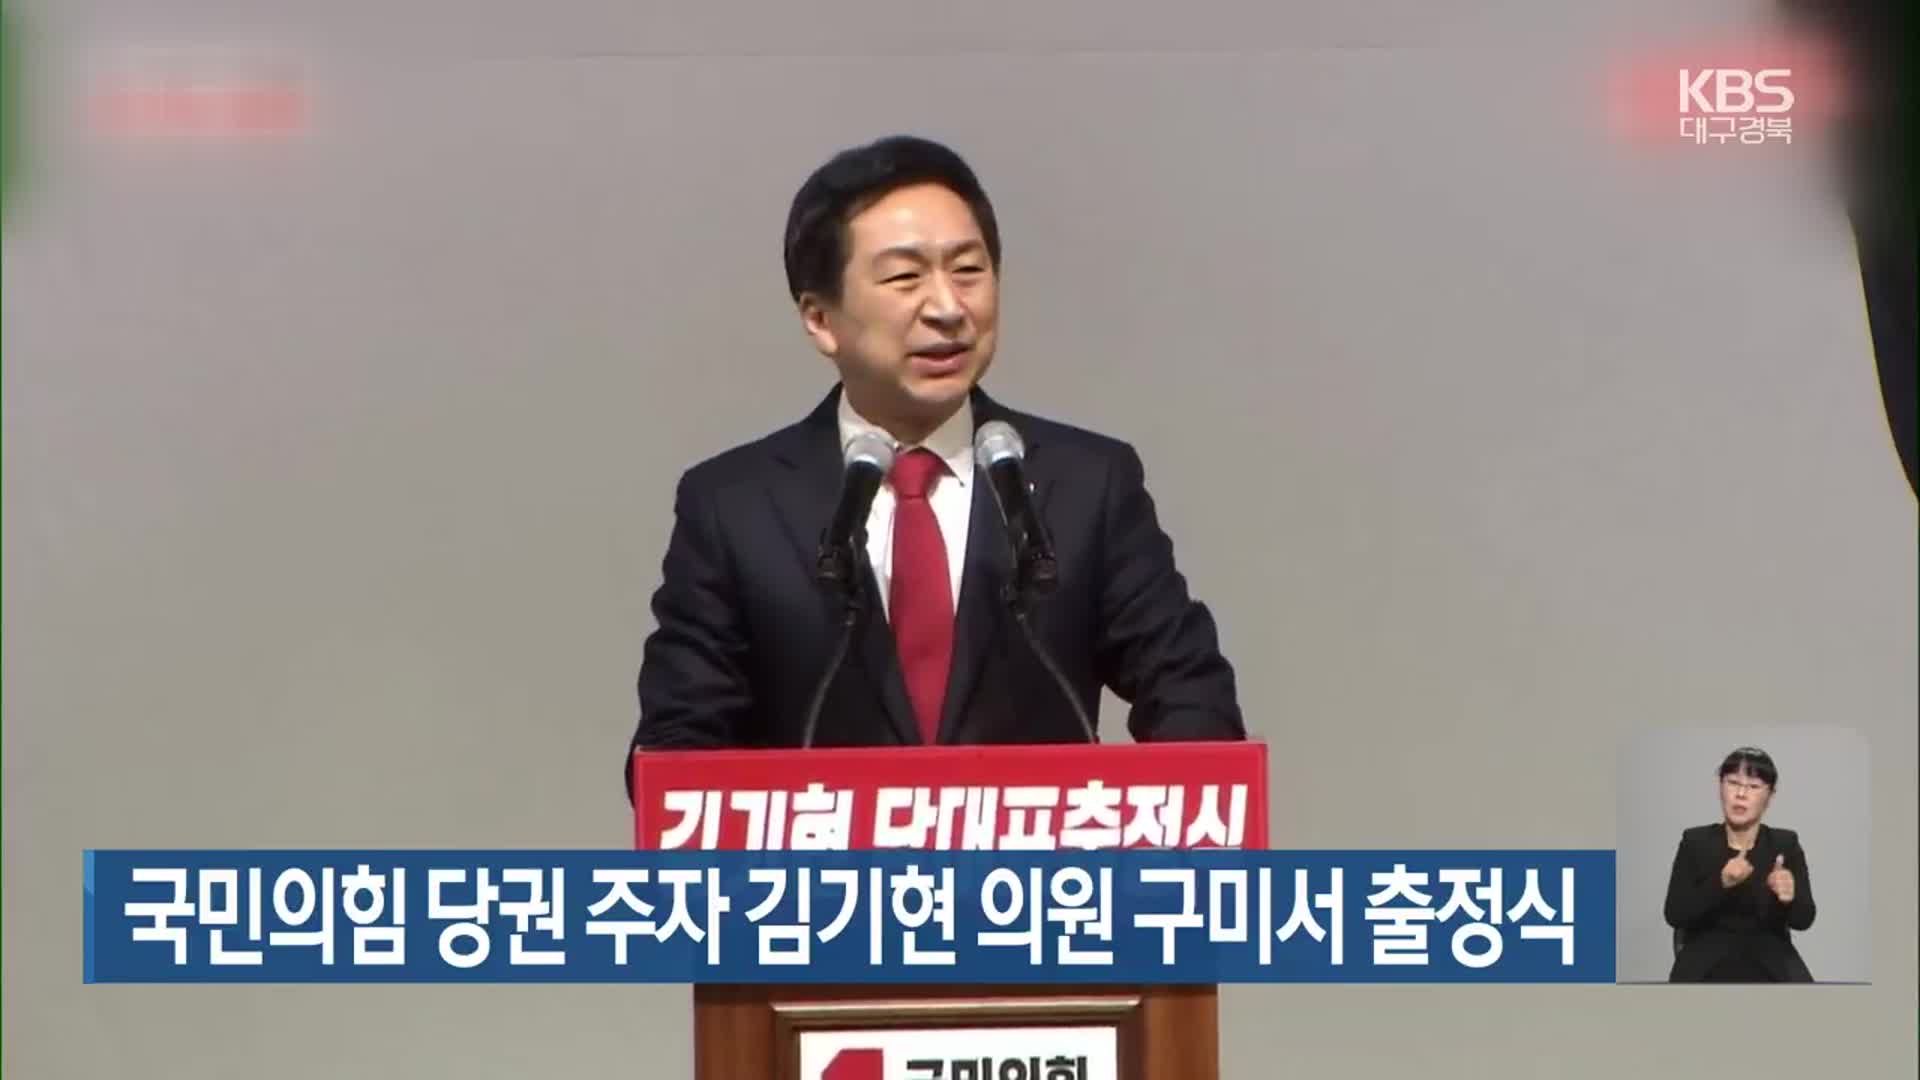 국민의힘 당권 주자 김기현 의원 구미서 출정식